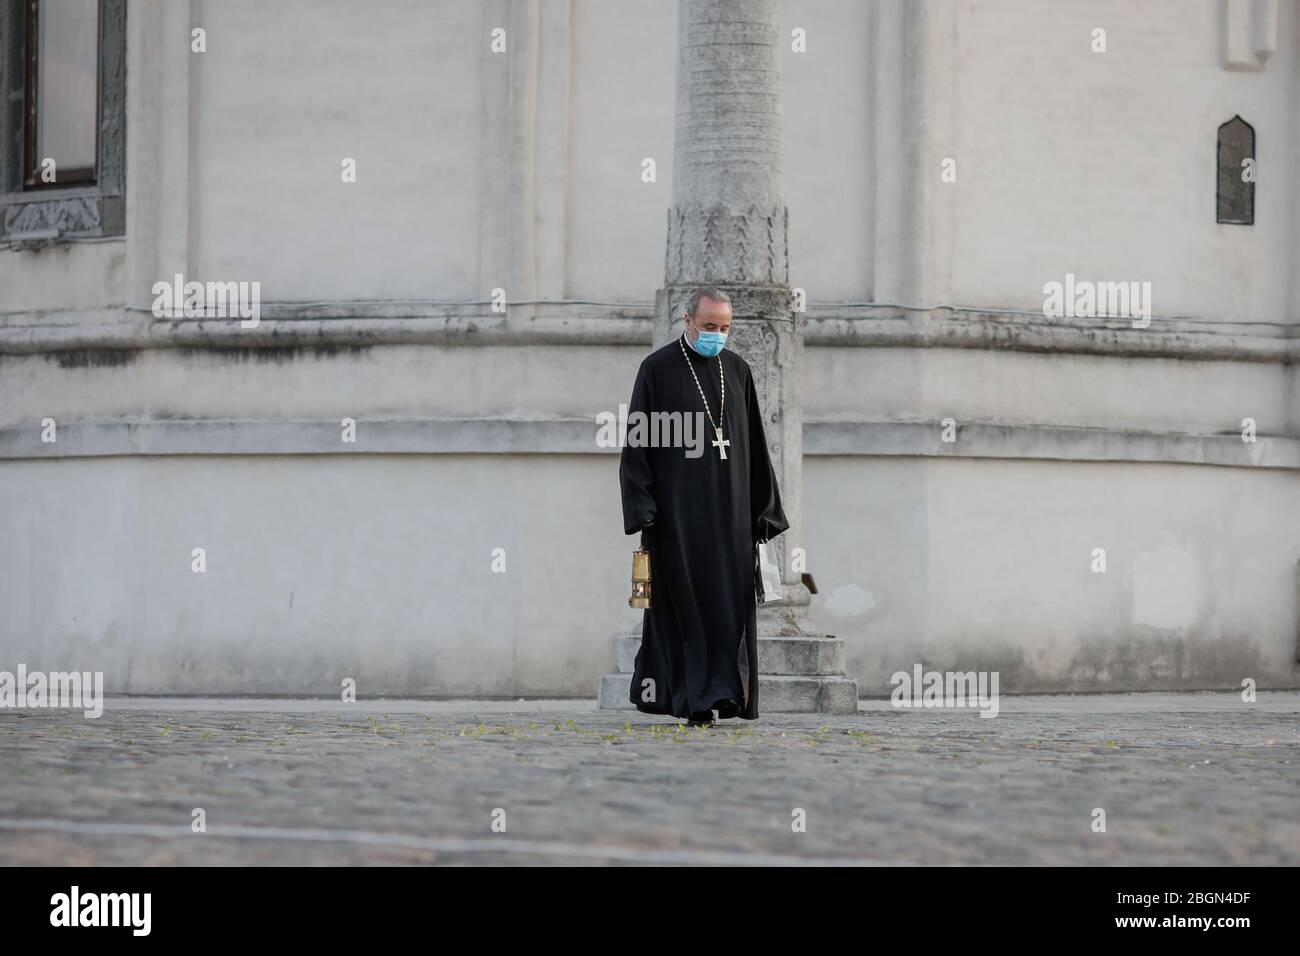 Bukarest, Rumänien - 18. April 2020: Ein orthodoxer christlicher Priester mit einer chirurgischen Maske wegen der COVID-19 Pandemie trägt das Heilige Licht während der Stockfoto